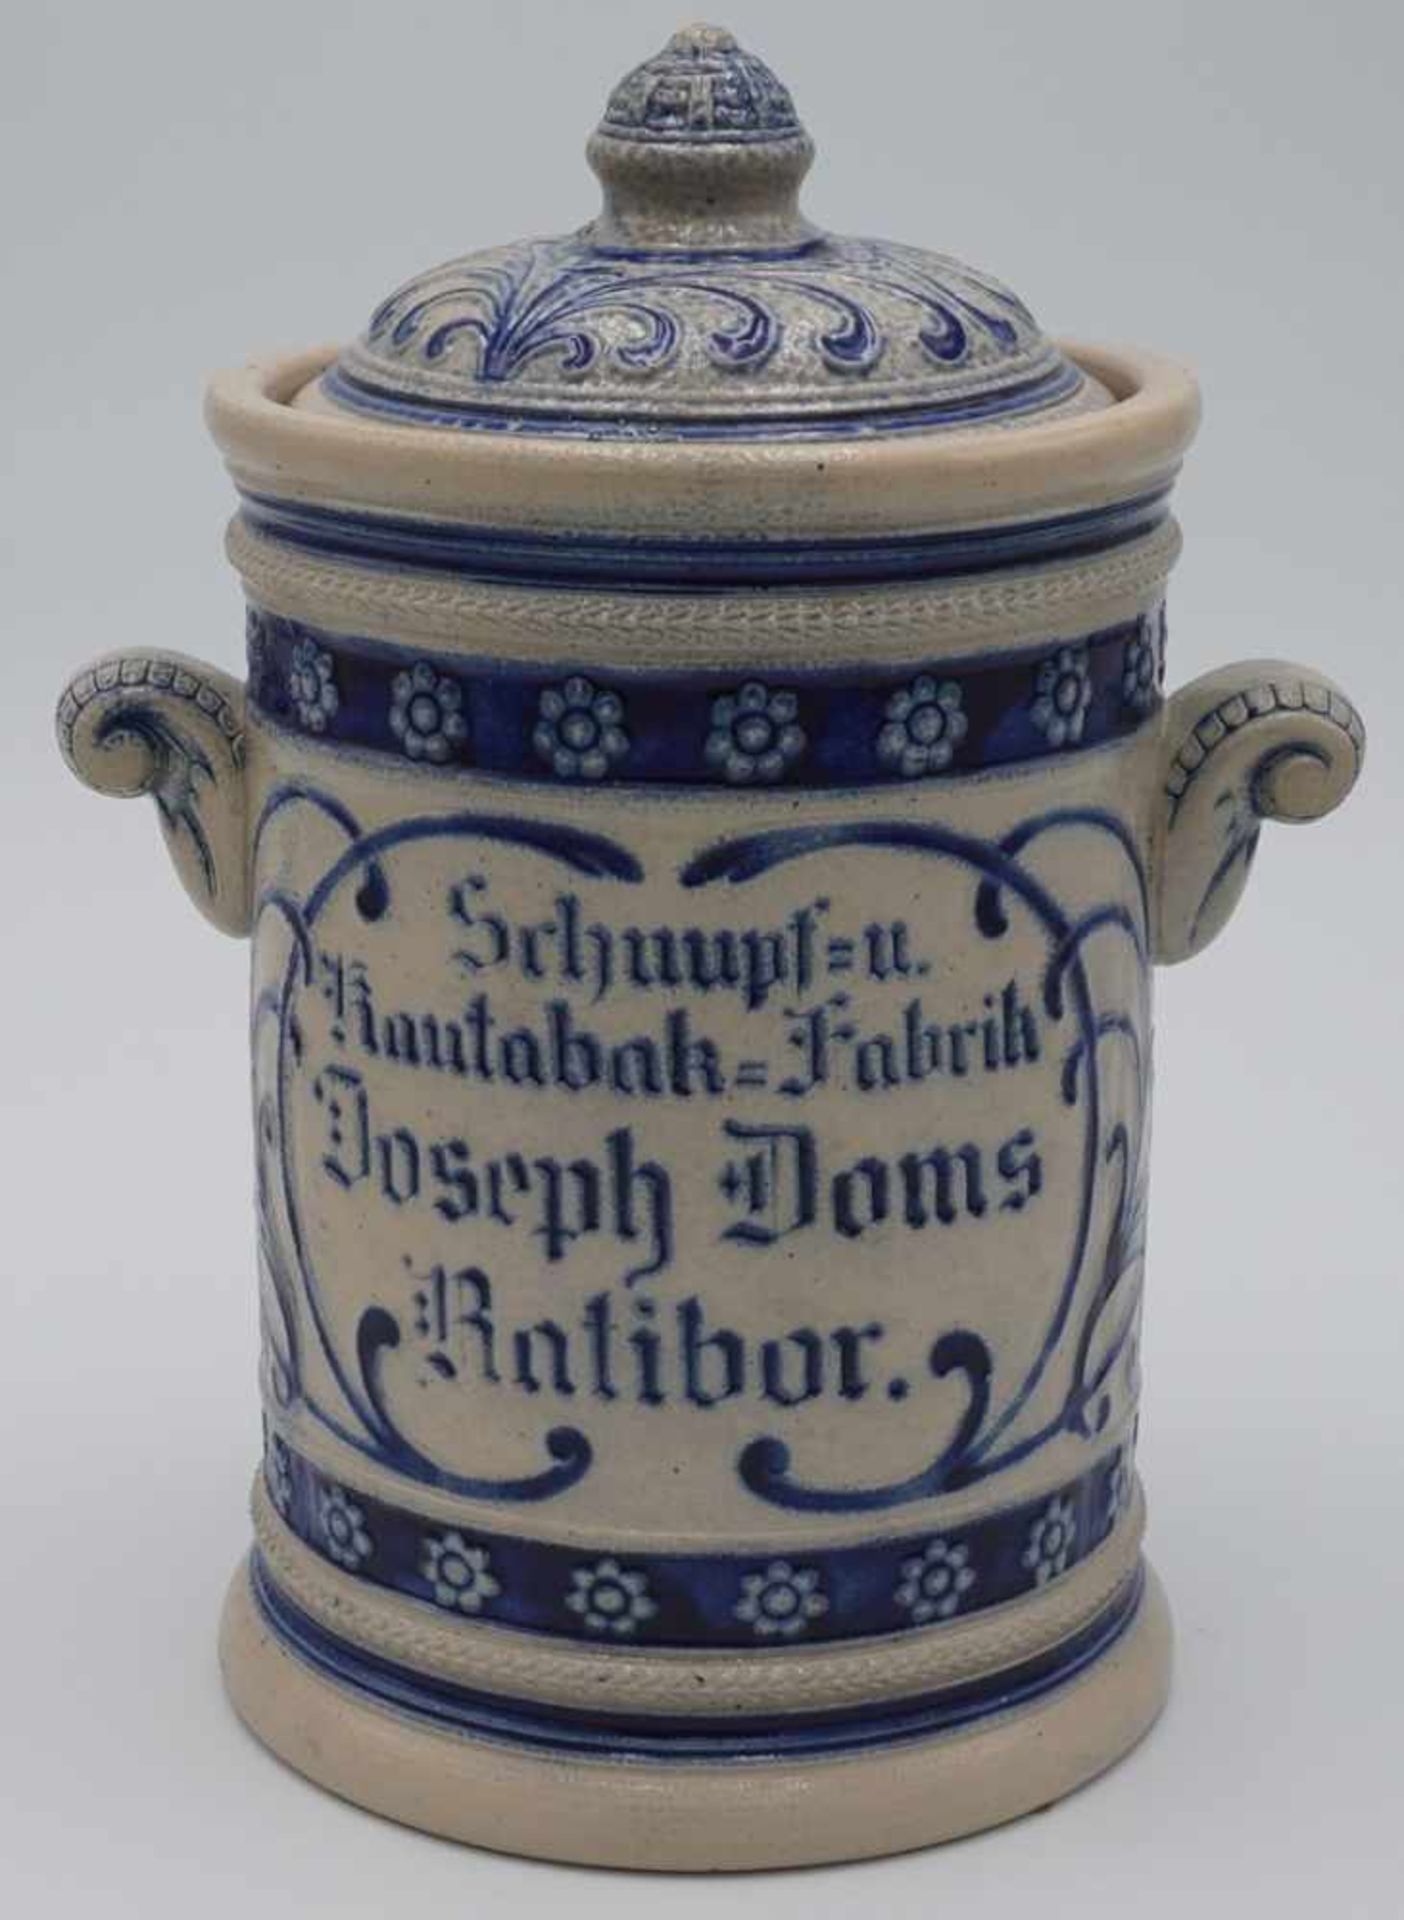 Joseph Doms Kautabktopfglasiertes grau-blaues Steinzeug, Beschrifung: "Schnupf- und Kautabak-